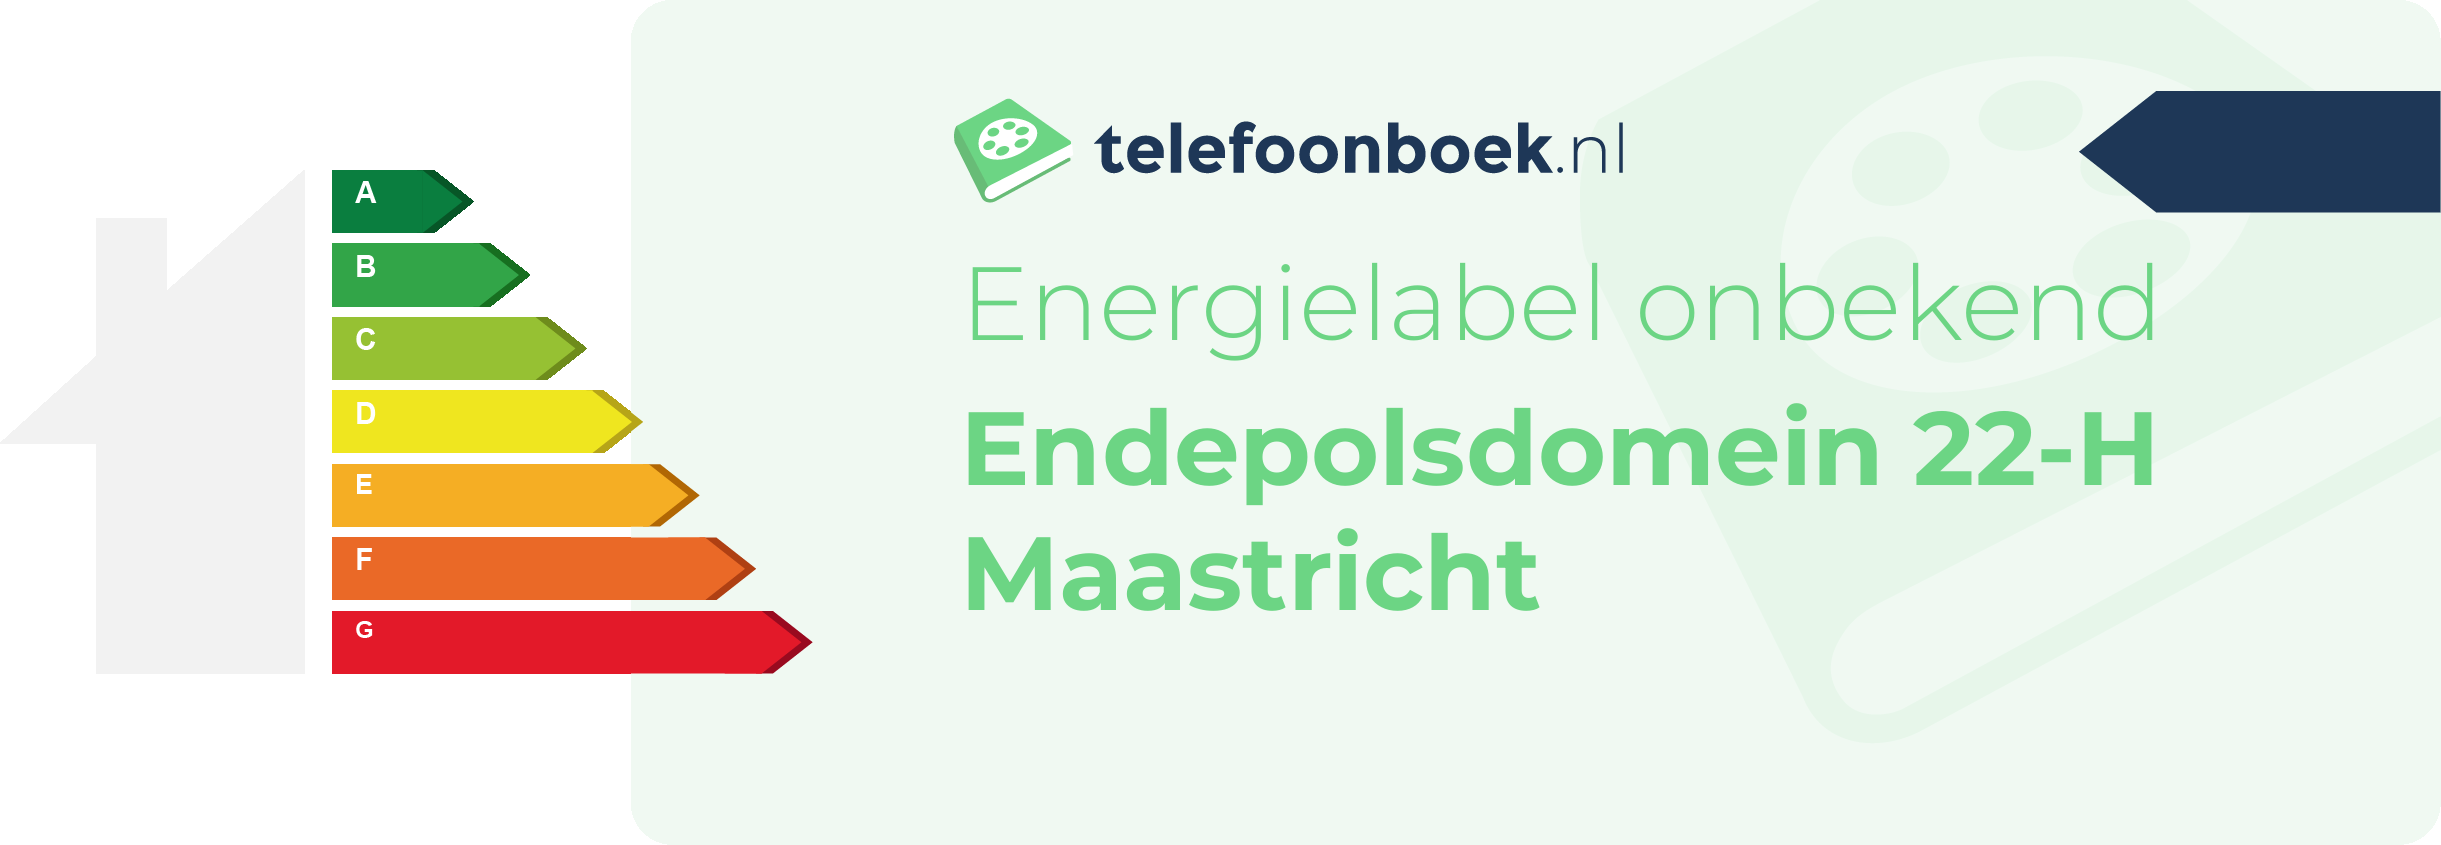 Energielabel Endepolsdomein 22-H Maastricht